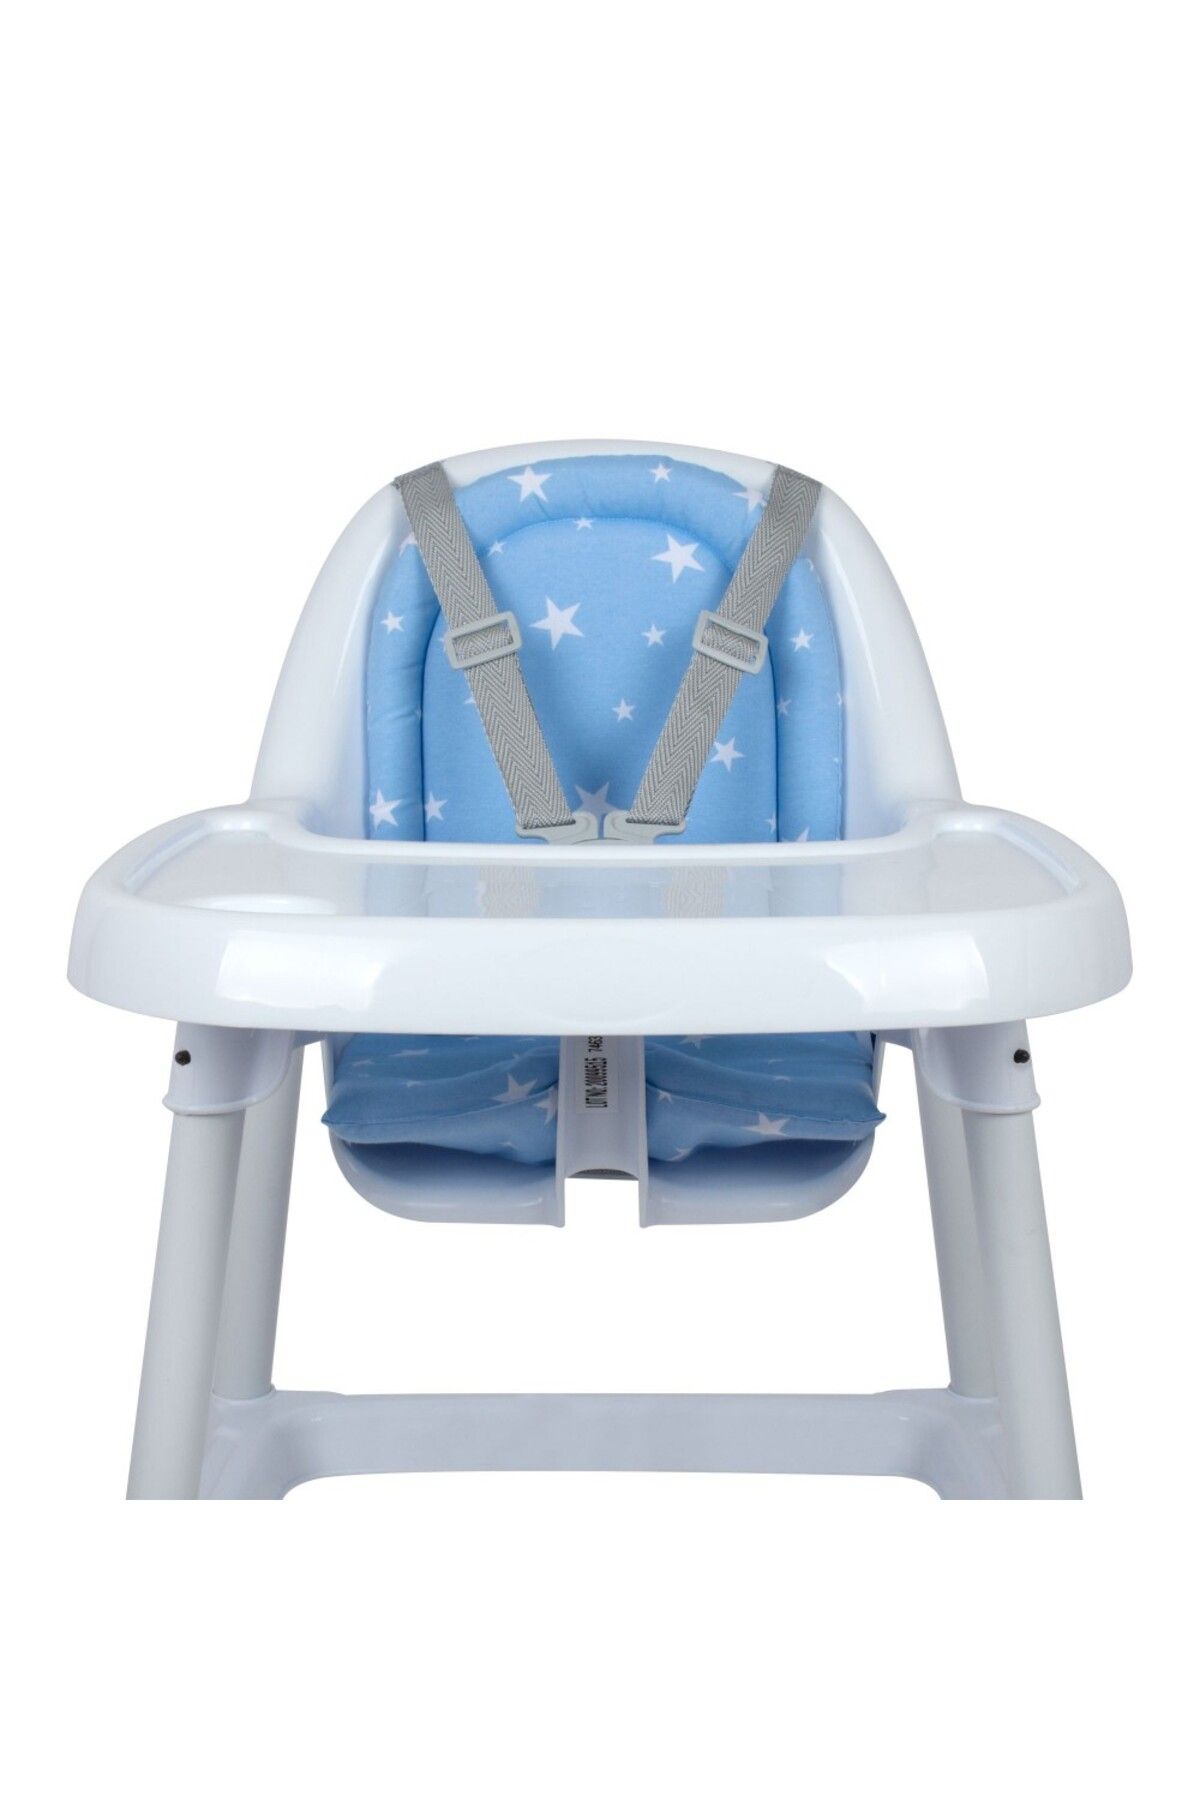 Sevi Bebe Eko Mama Sandalyesi Minderi Art-157 Mavi Yıldız